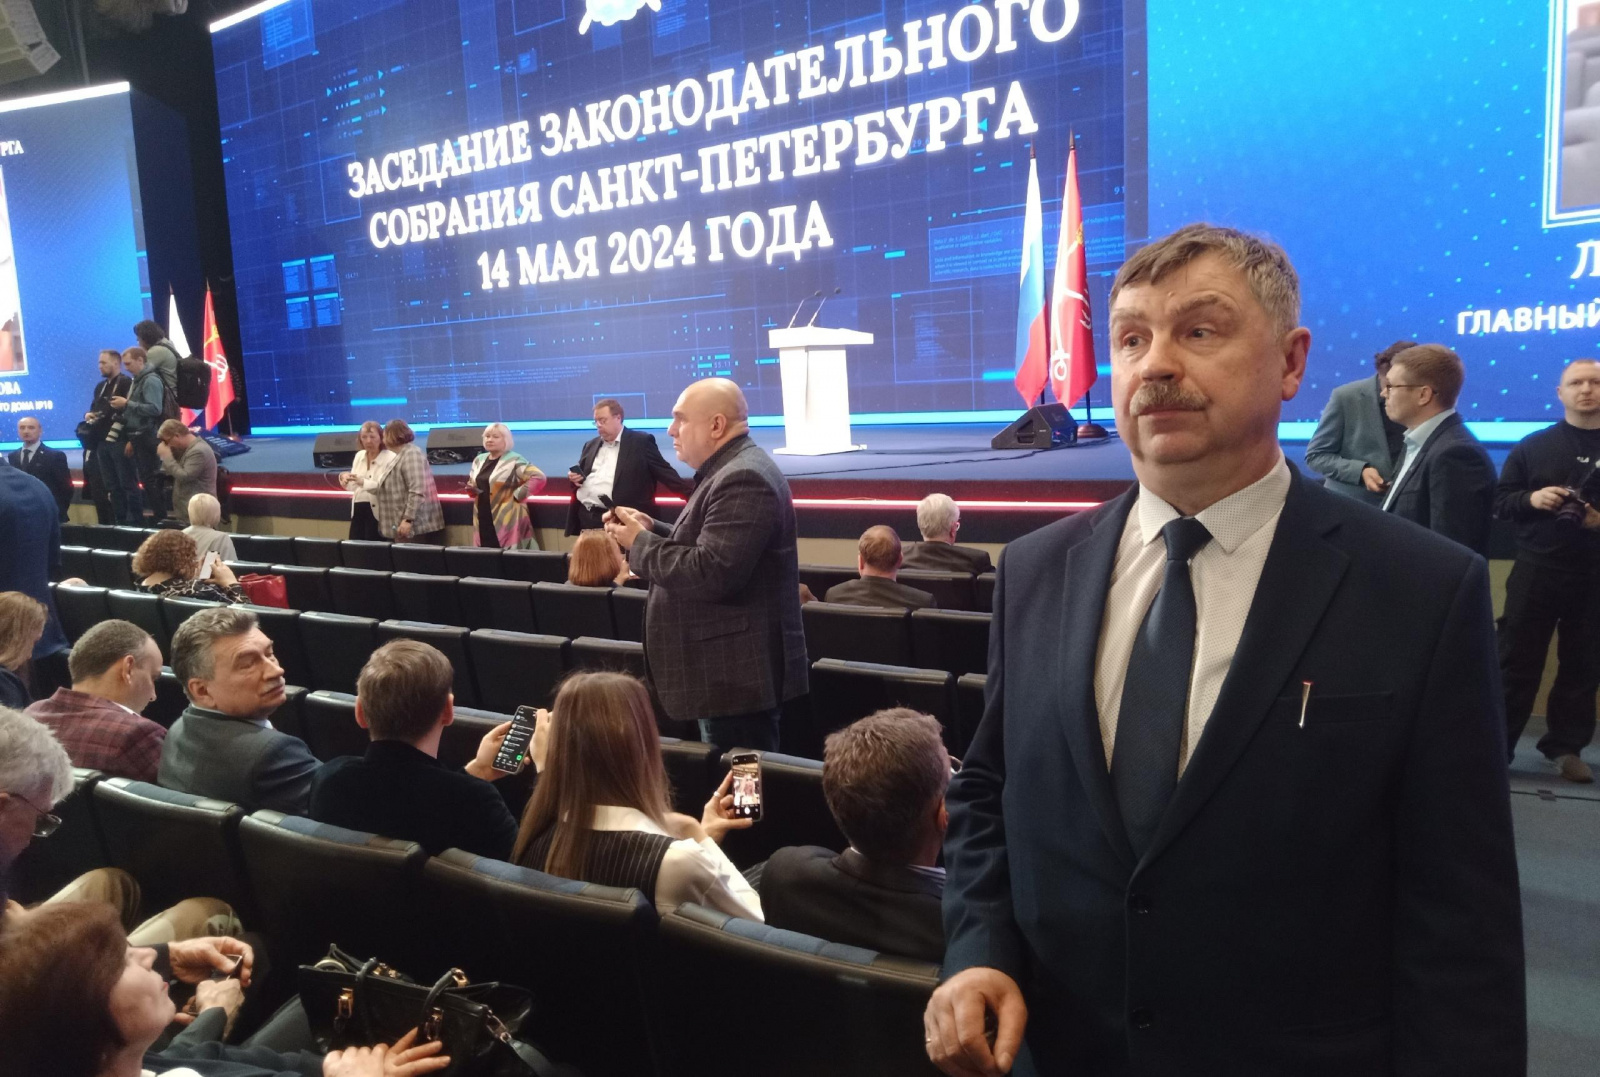 Алексей Колосов принял участие в выездном пленарном заседании Законодательного Собрания Санкт-Петербурга